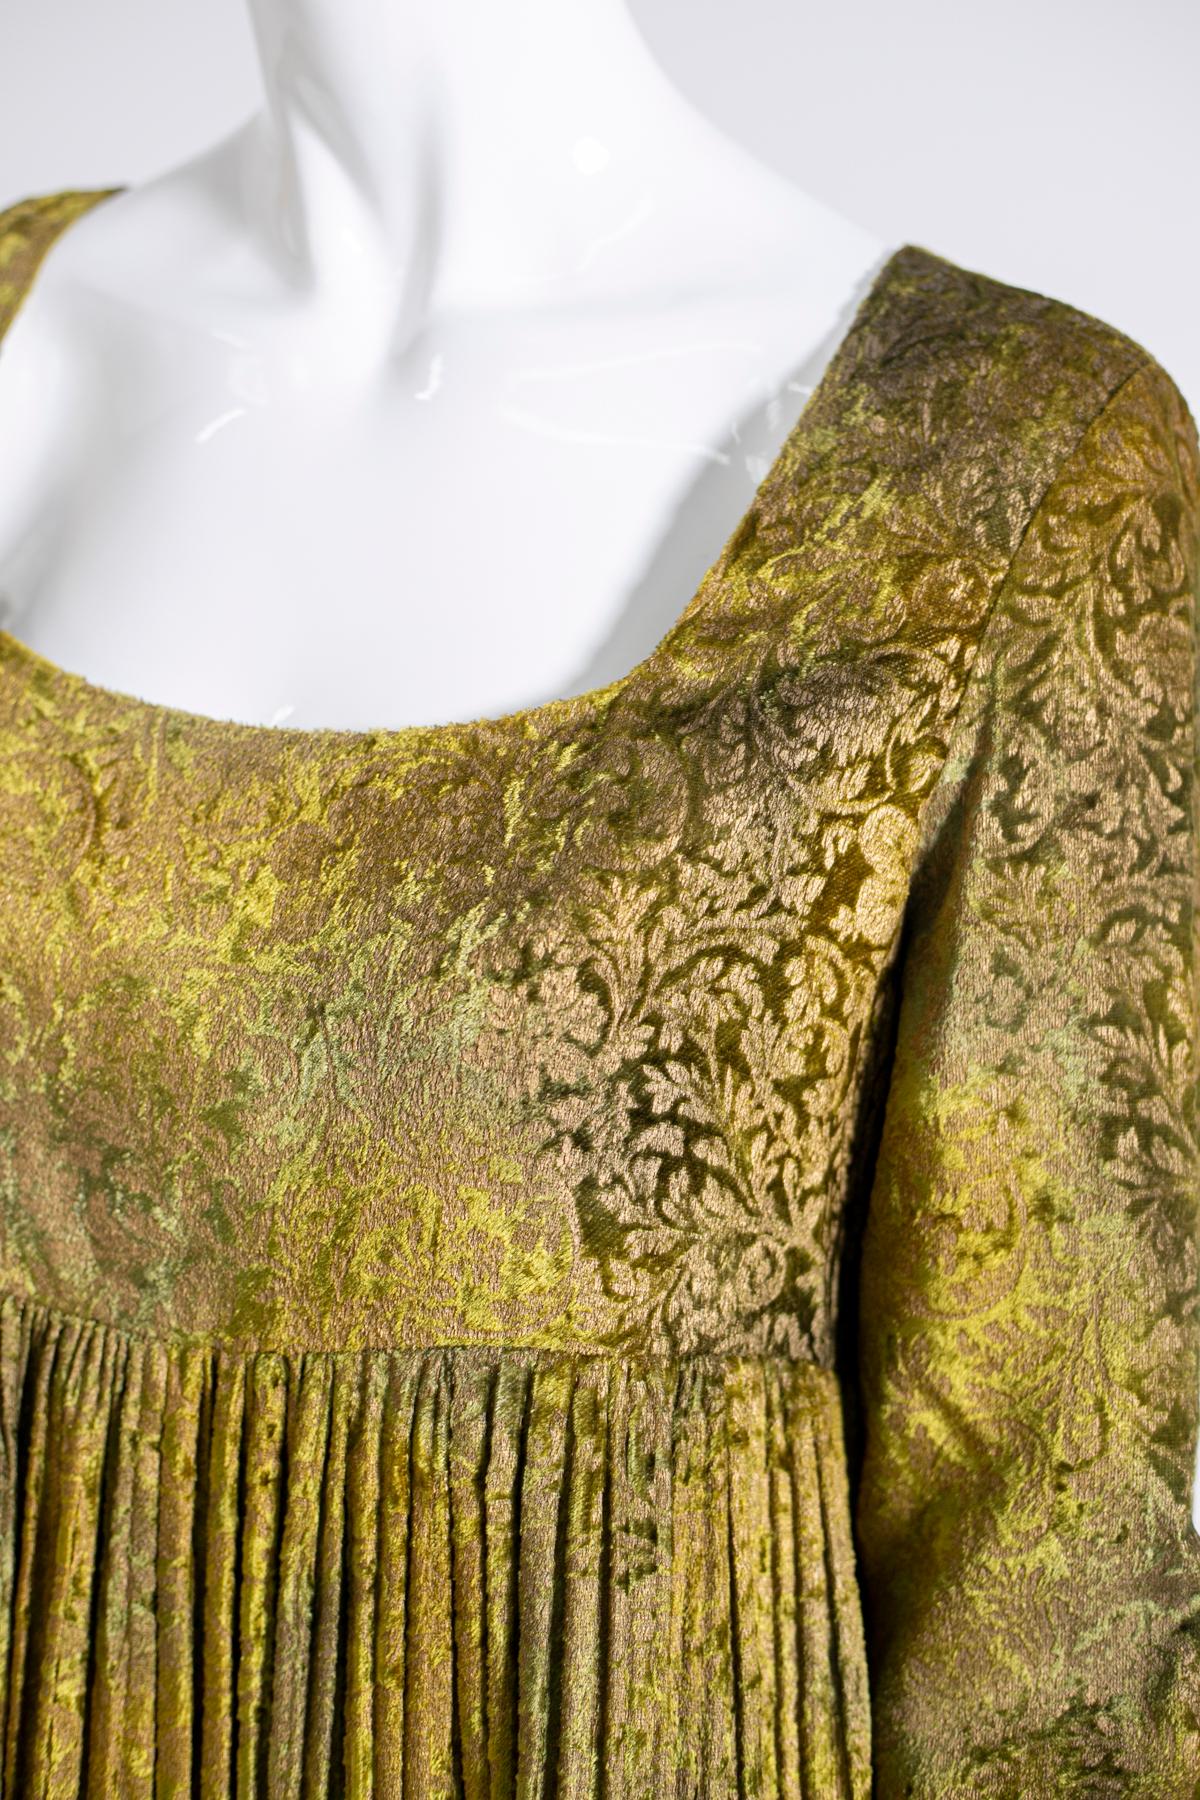 Wunderschönes Damensatin-Kleid von Alberta Ferretti, einem berühmten italienischen Designer. Das Kleid hat ein ganz besonderes und raffiniertes Design, einen tiefen Bootsausschnitt, lange Ärmel und einen Faltenrock, der bis knapp über die Knie